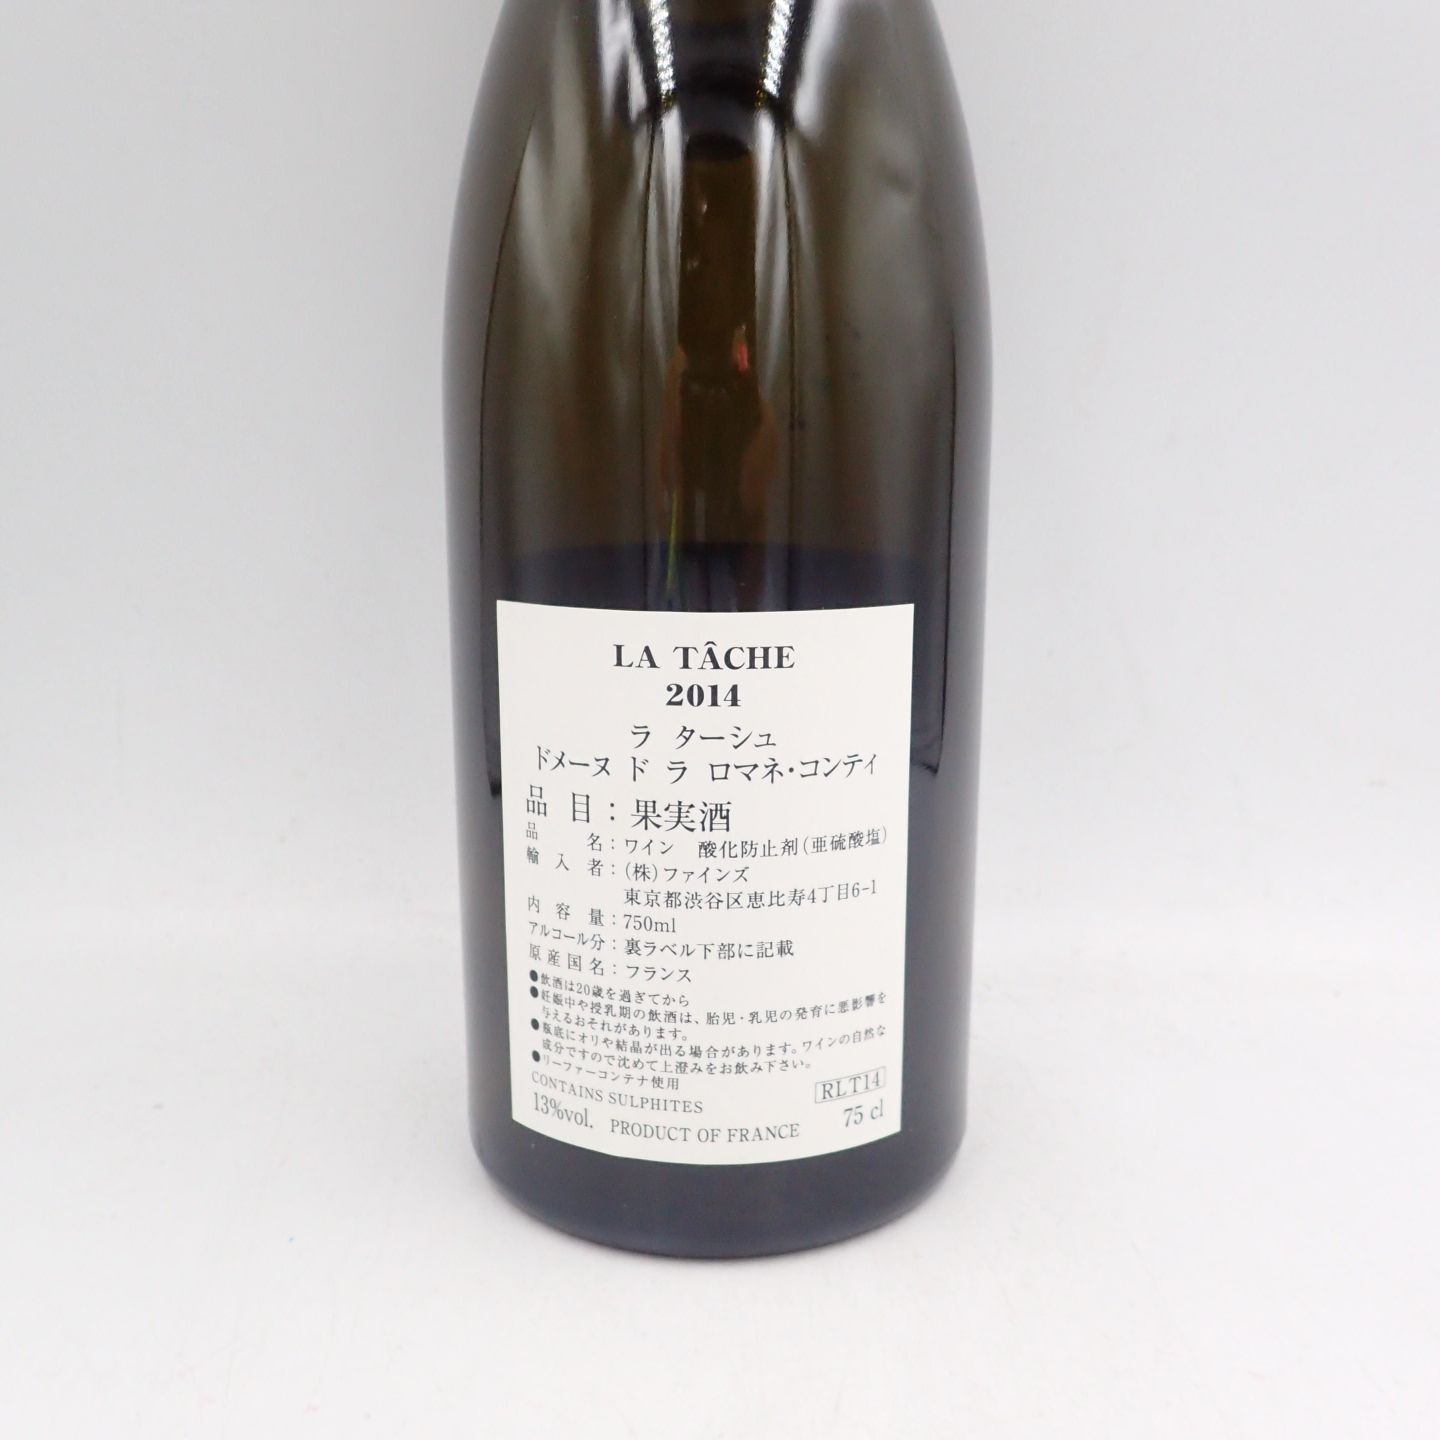 DRC ラターシュ 2014 750ml 空き瓶 LA TACHE【K】 - メルカリ